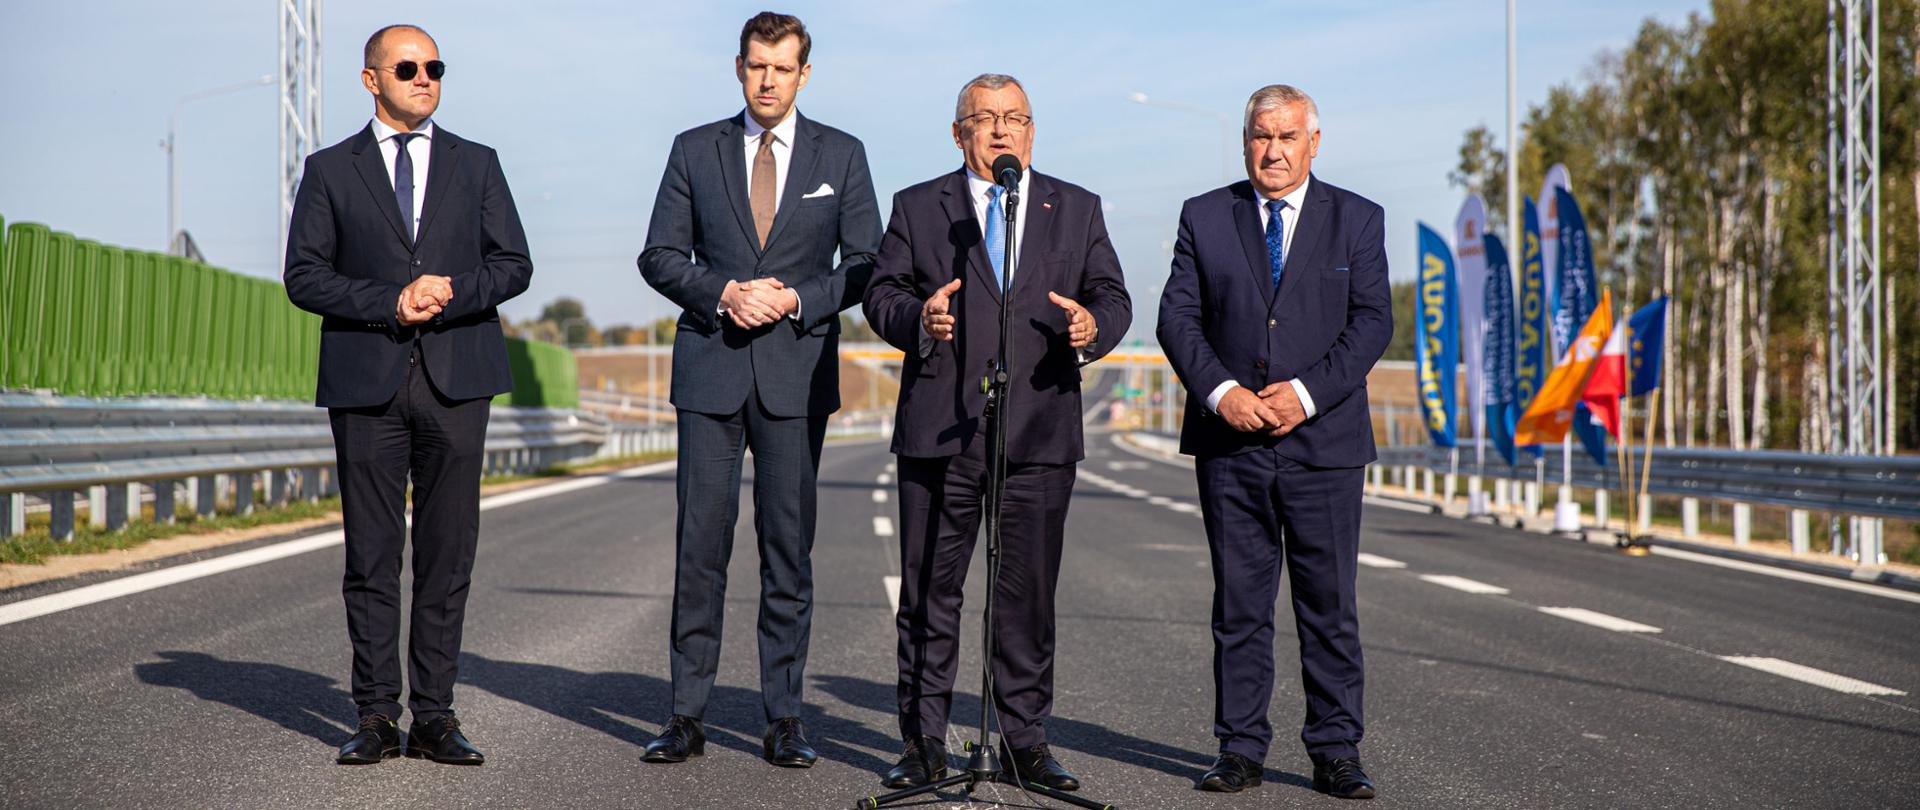 Konferencja prasowa z udziałem ministra infrastruktury Andrzeja Adamczyka, dotycząca otwarcia drogi ekspresowej S61 na odcinku Podborze – Śniadowo.